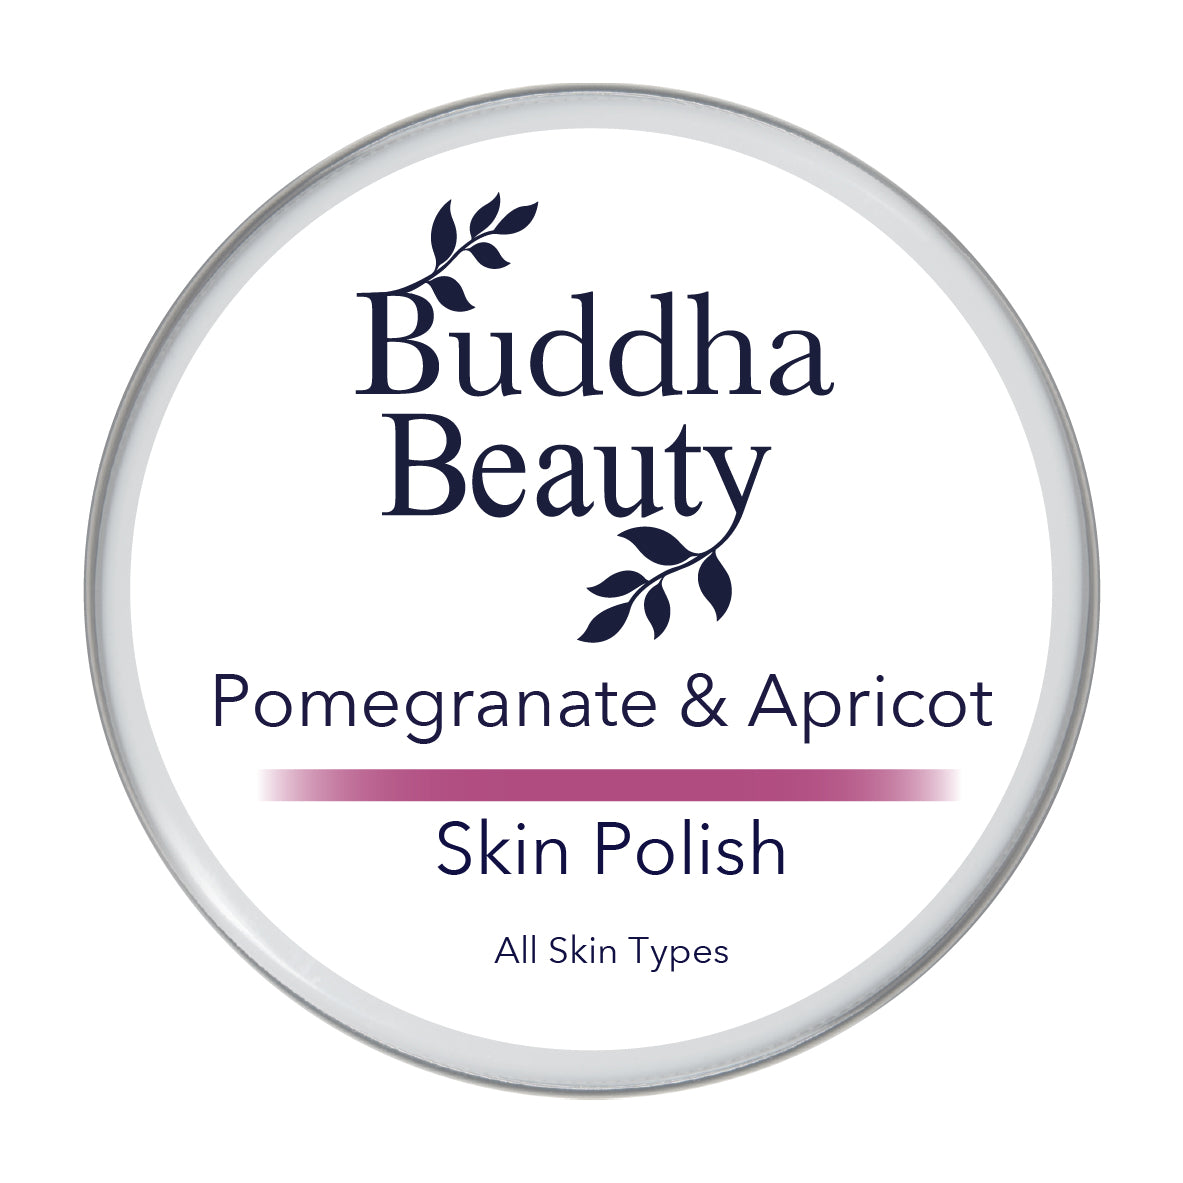 Pomegranate & Apricot Skin Polish | Buddha Beauty Trade